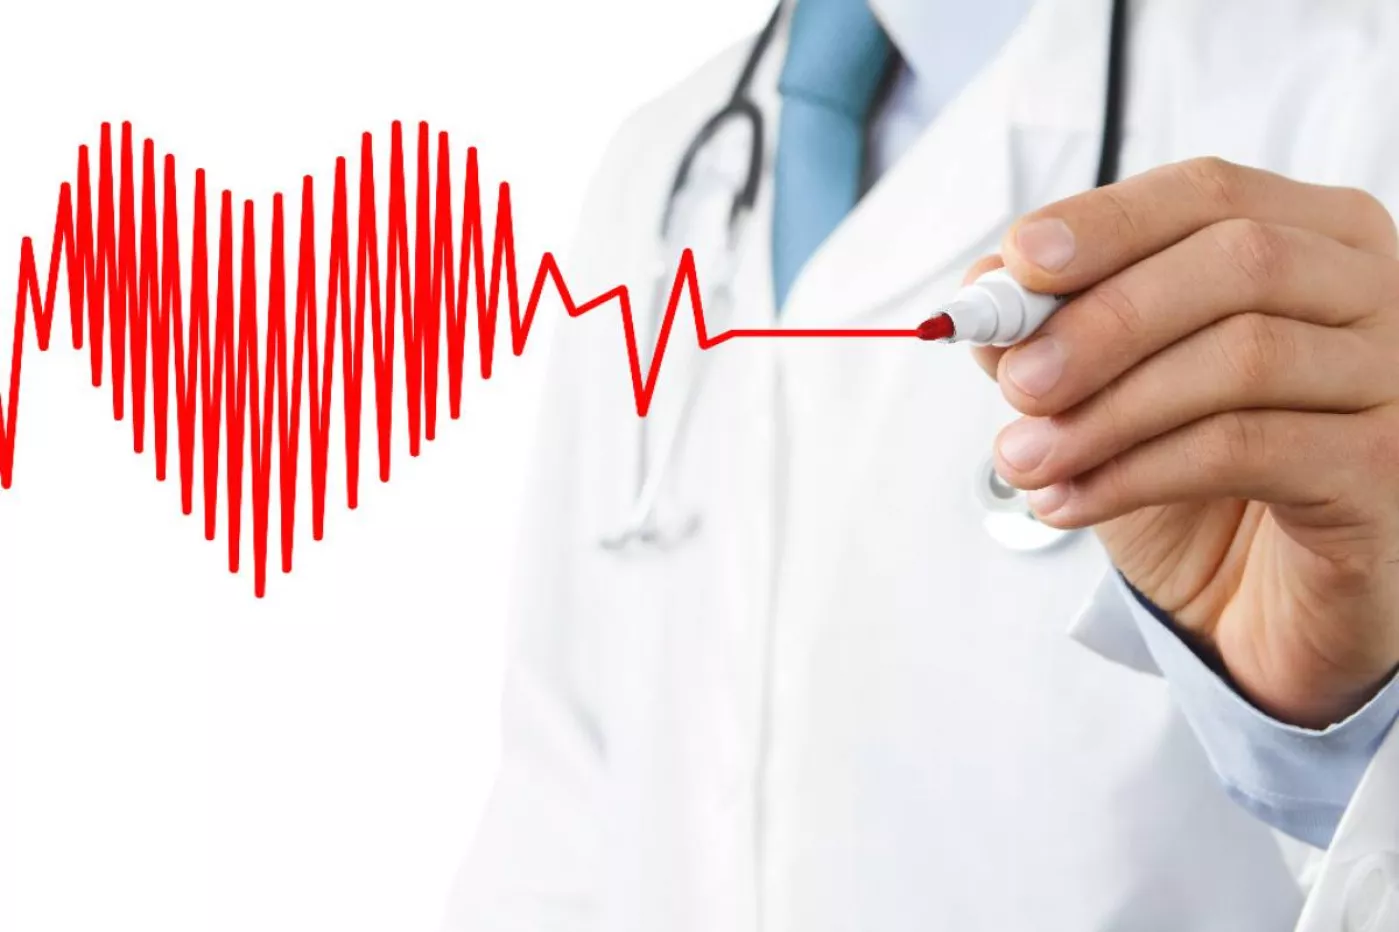 Más del 94% de pacientes con infarto agudo fueron tratados con angioplastia primaria. 